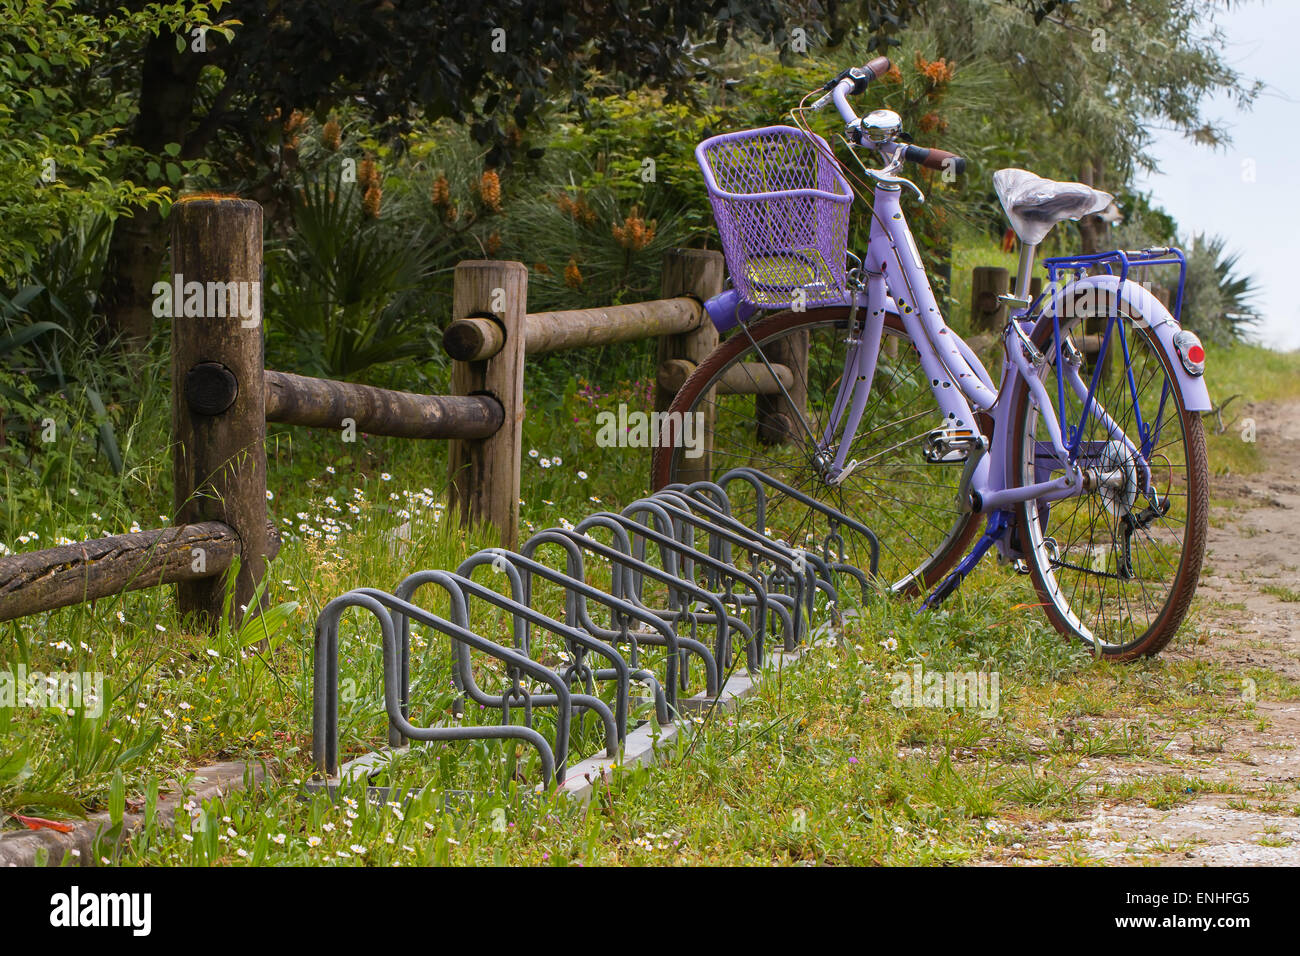 Wooden bicycle stand immagini e fotografie stock ad alta risoluzione - Alamy